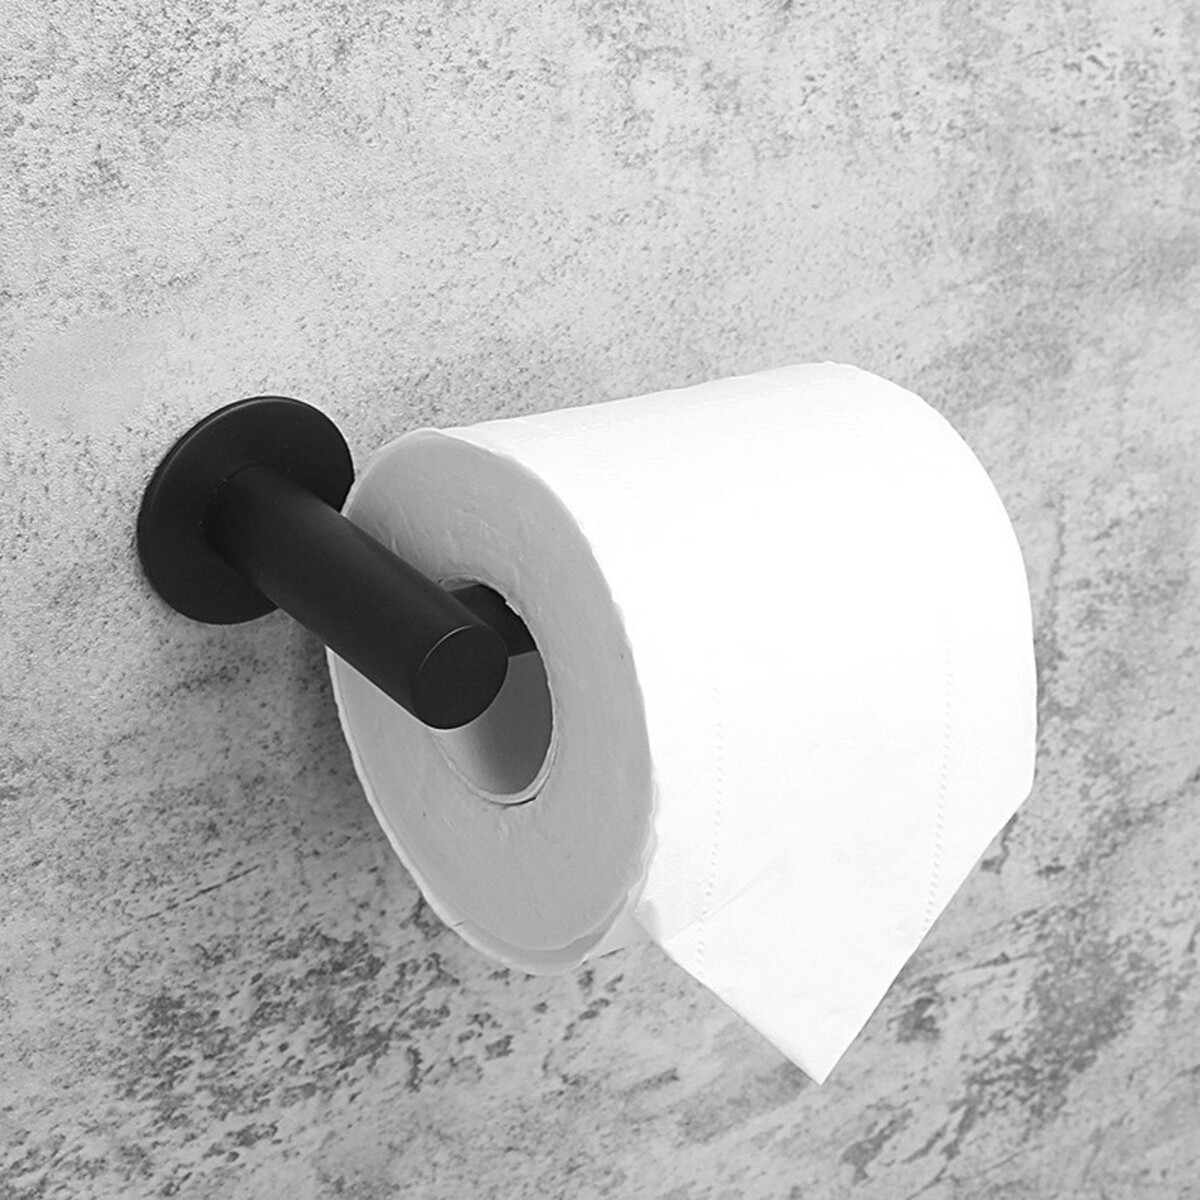 Держатель для туалетной бумаги штольц stölz, 16,2×2,5×9,5 см, нержавеющая сталь, цвет черный держатель для туалетной бумаги на 2 рулона нержавеющая сталь